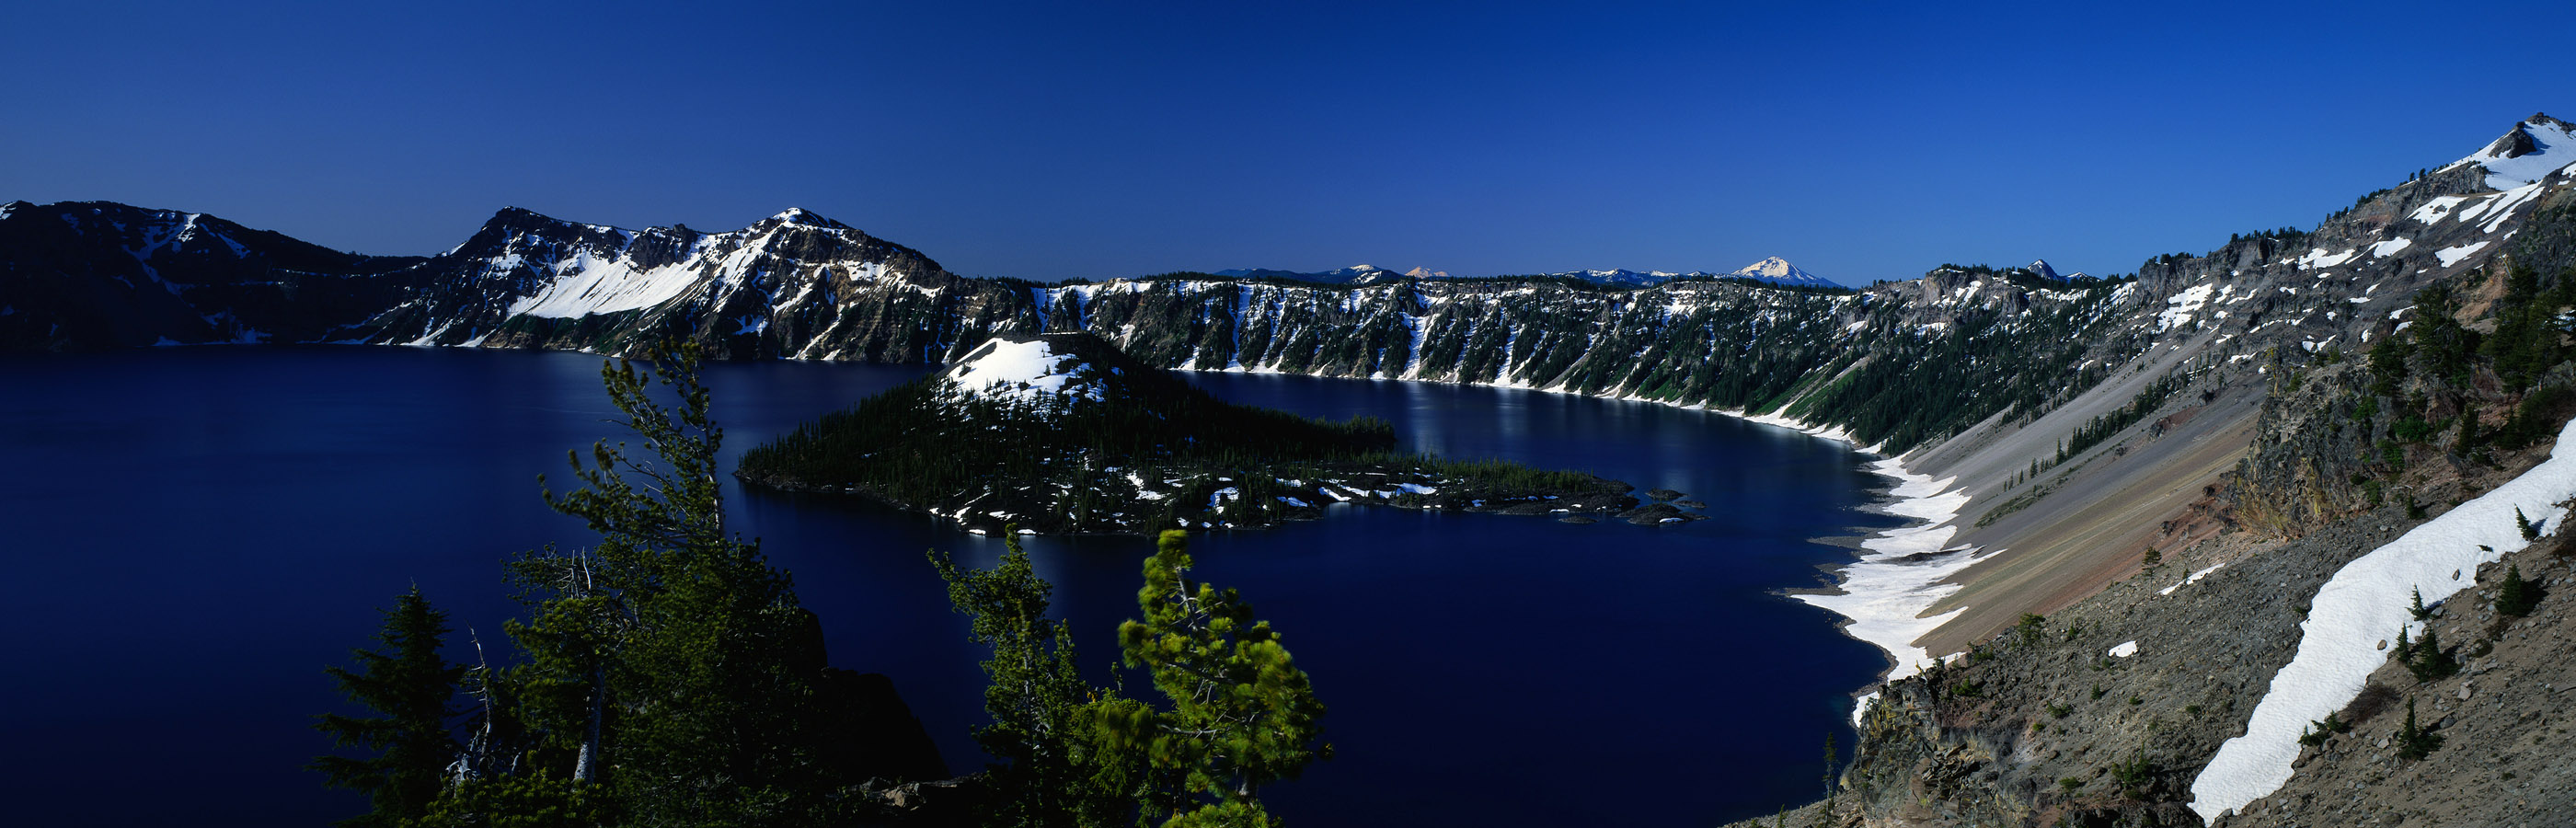 Crater Lake - HD Wallpaper 